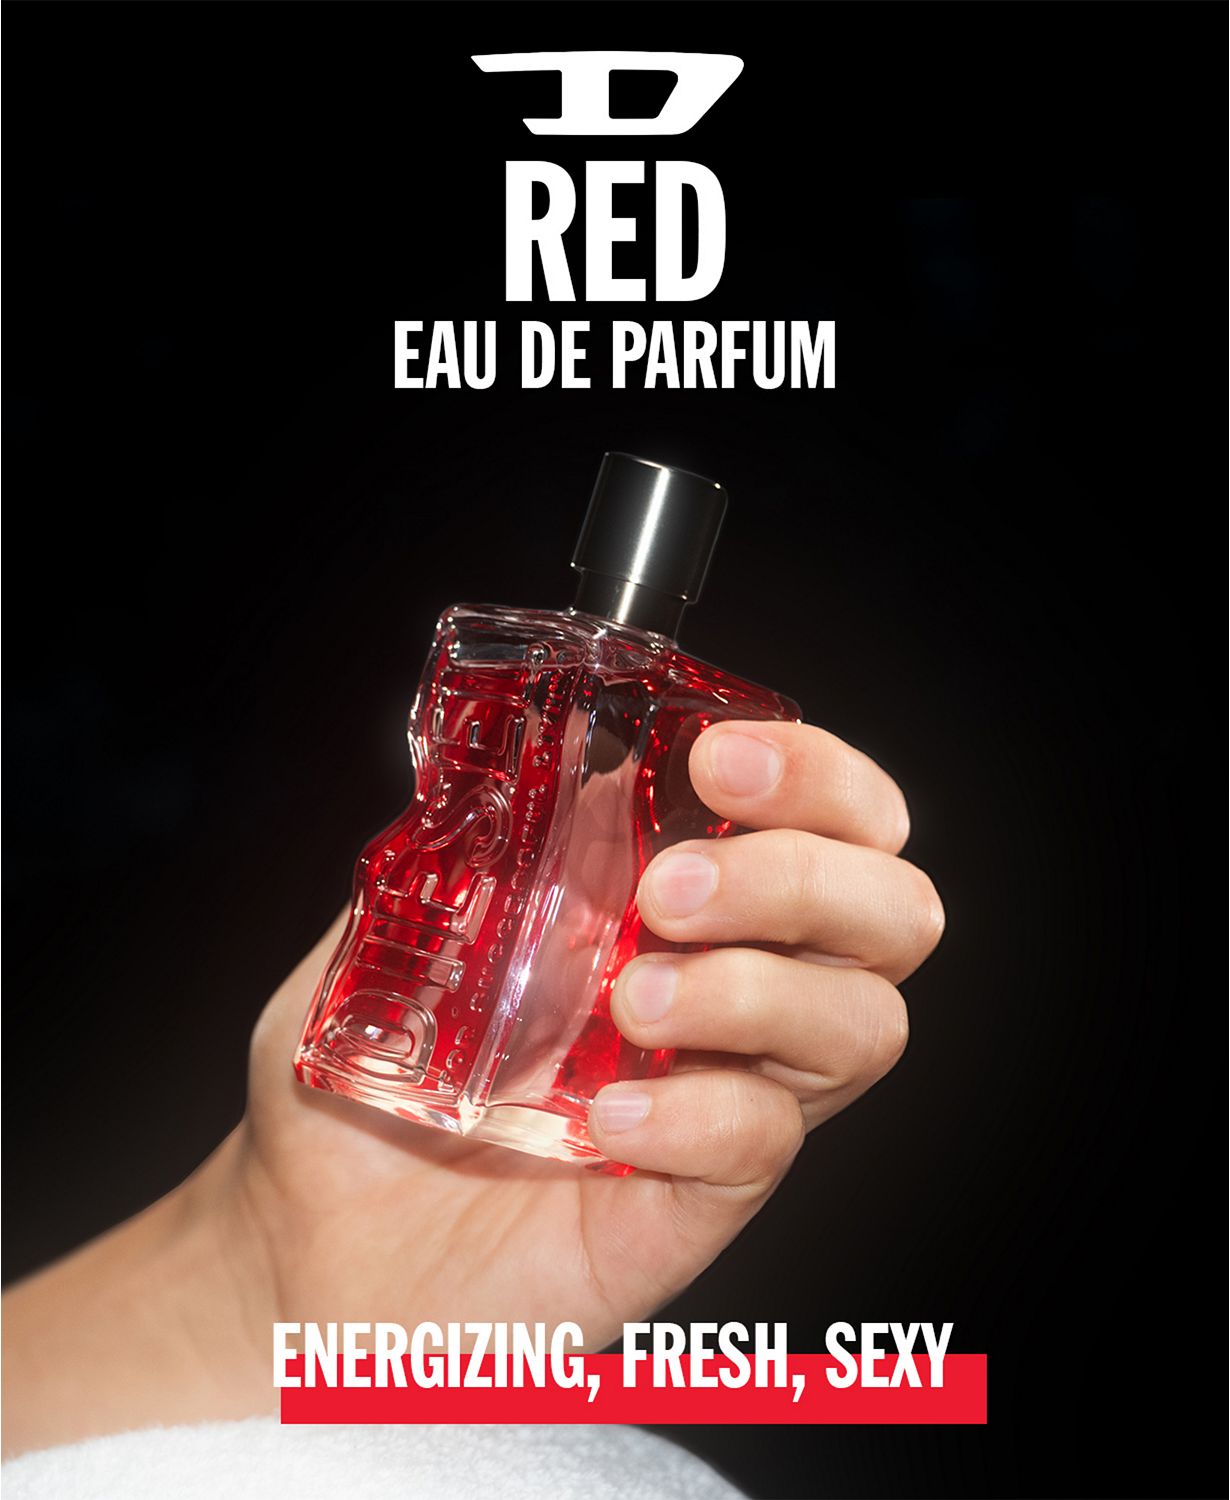 Diesel Men's D Red Eau de Parfum Spray, 1 oz.